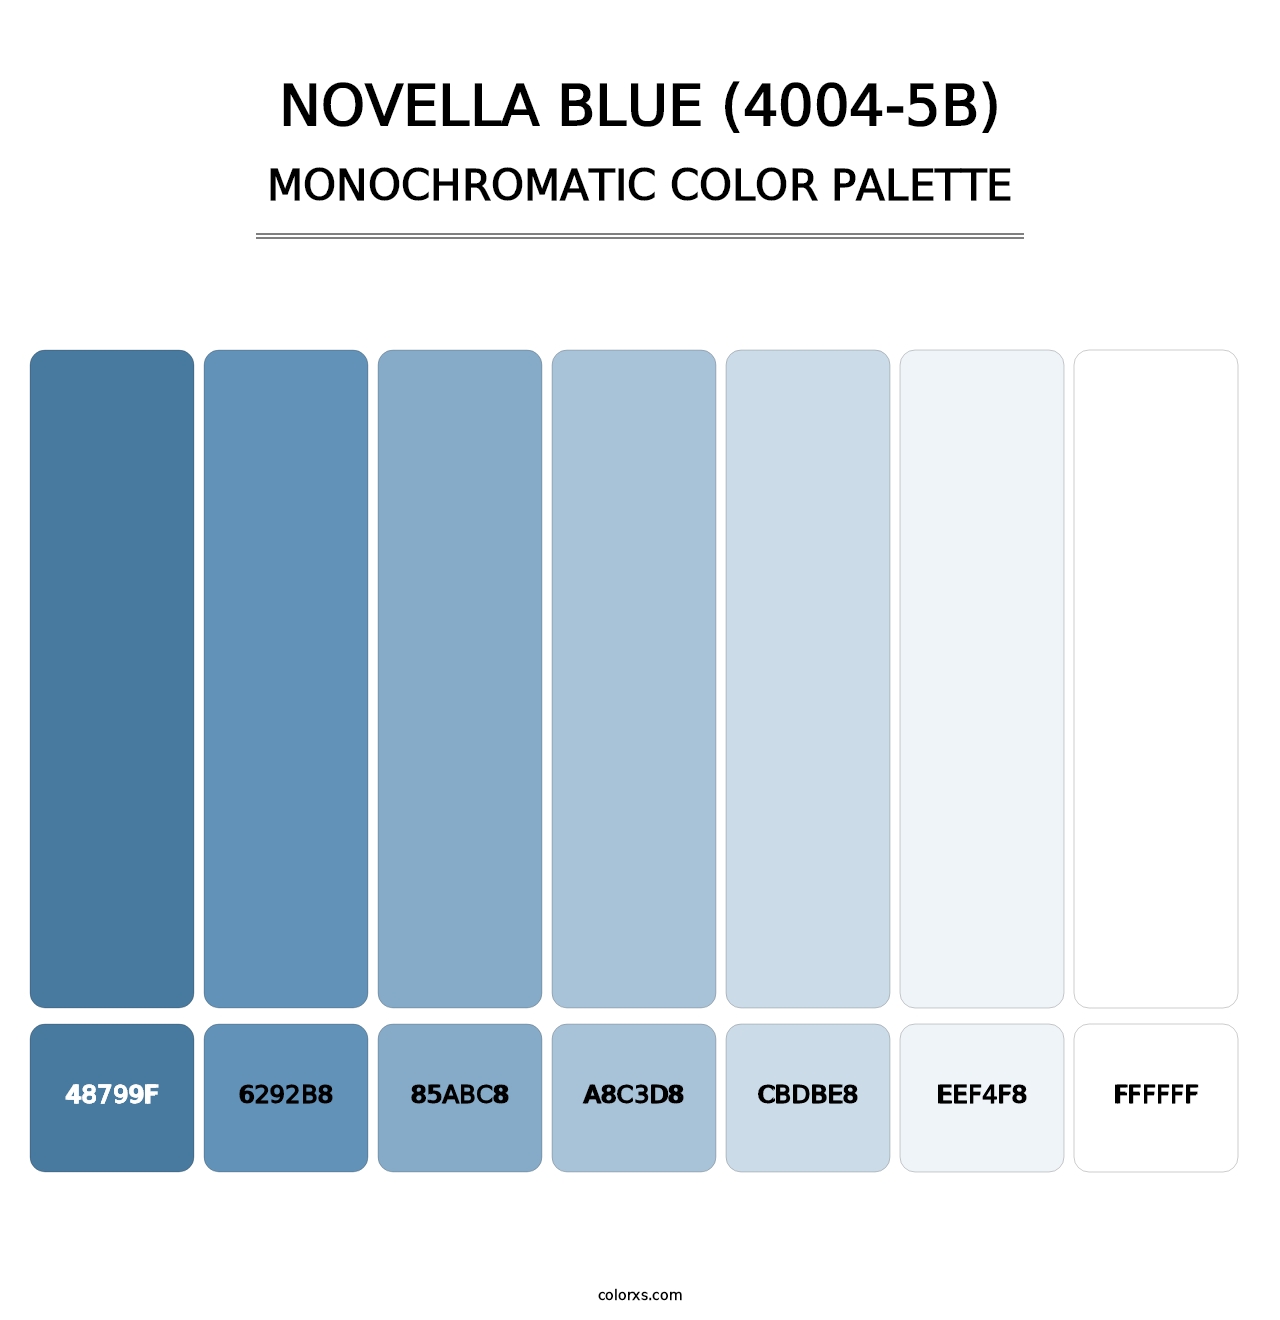 Novella Blue (4004-5B) - Monochromatic Color Palette